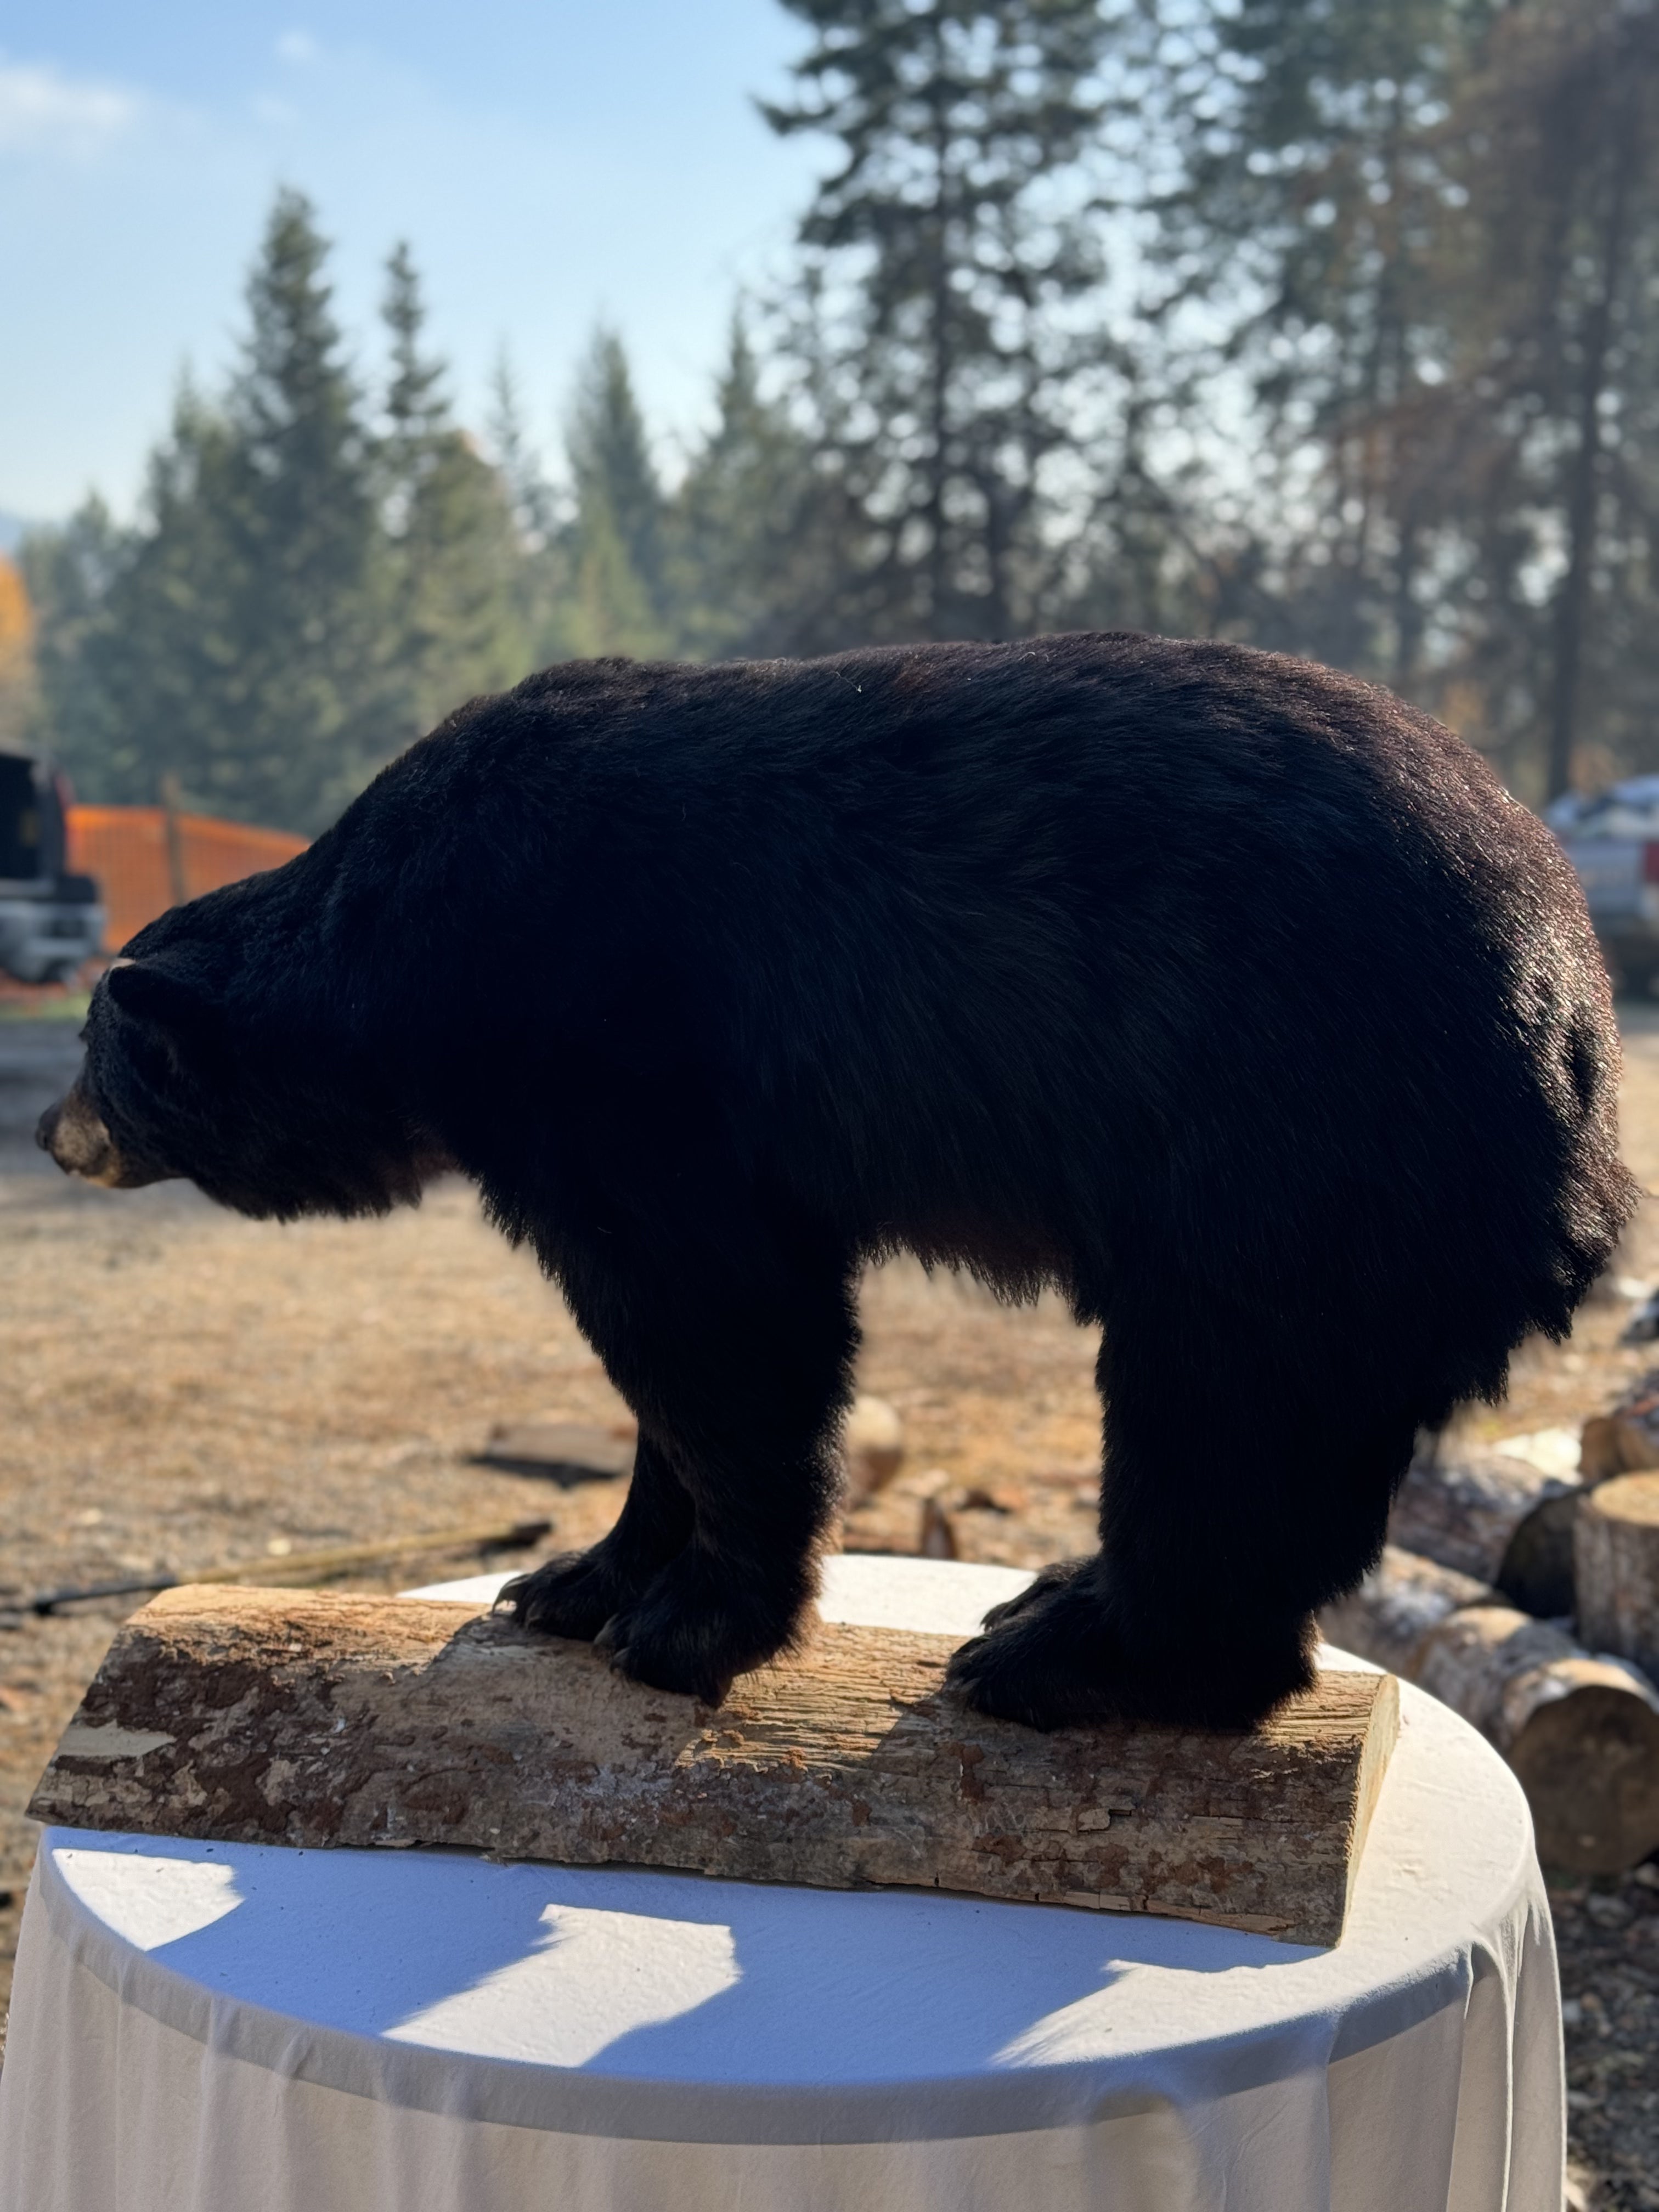 Black bear full body mount new